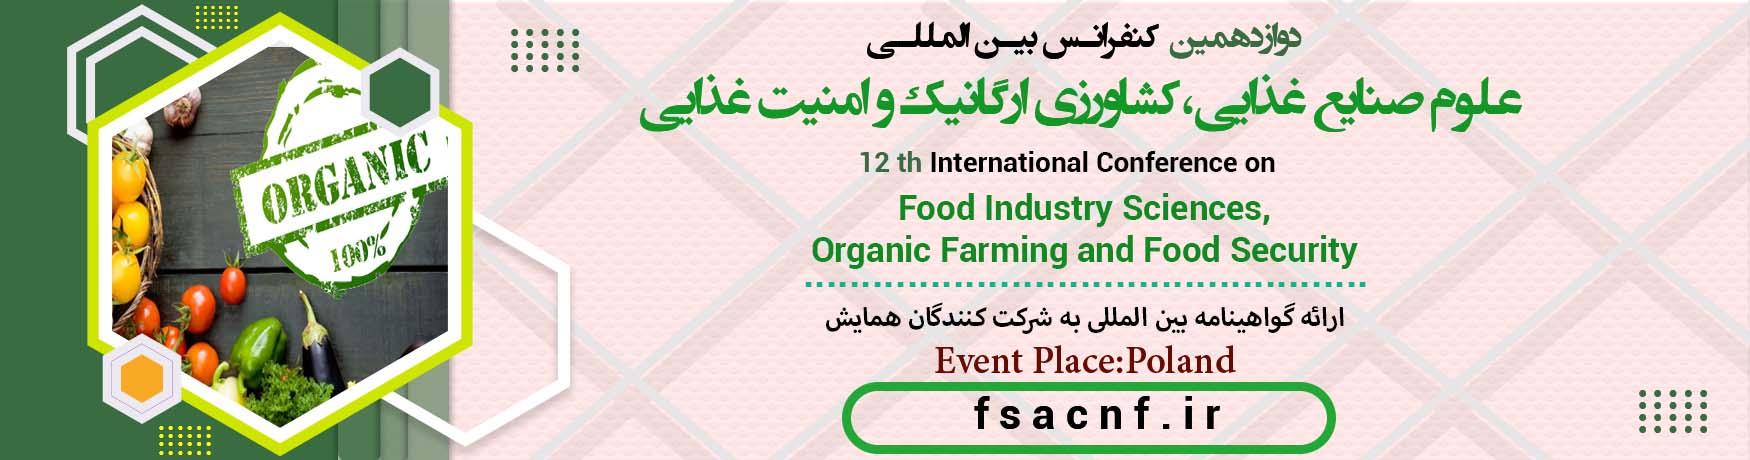 کنفرانس بین المللی علوم صنایع غذایی،کشاورزی ارگانیک و امنیت غذایی